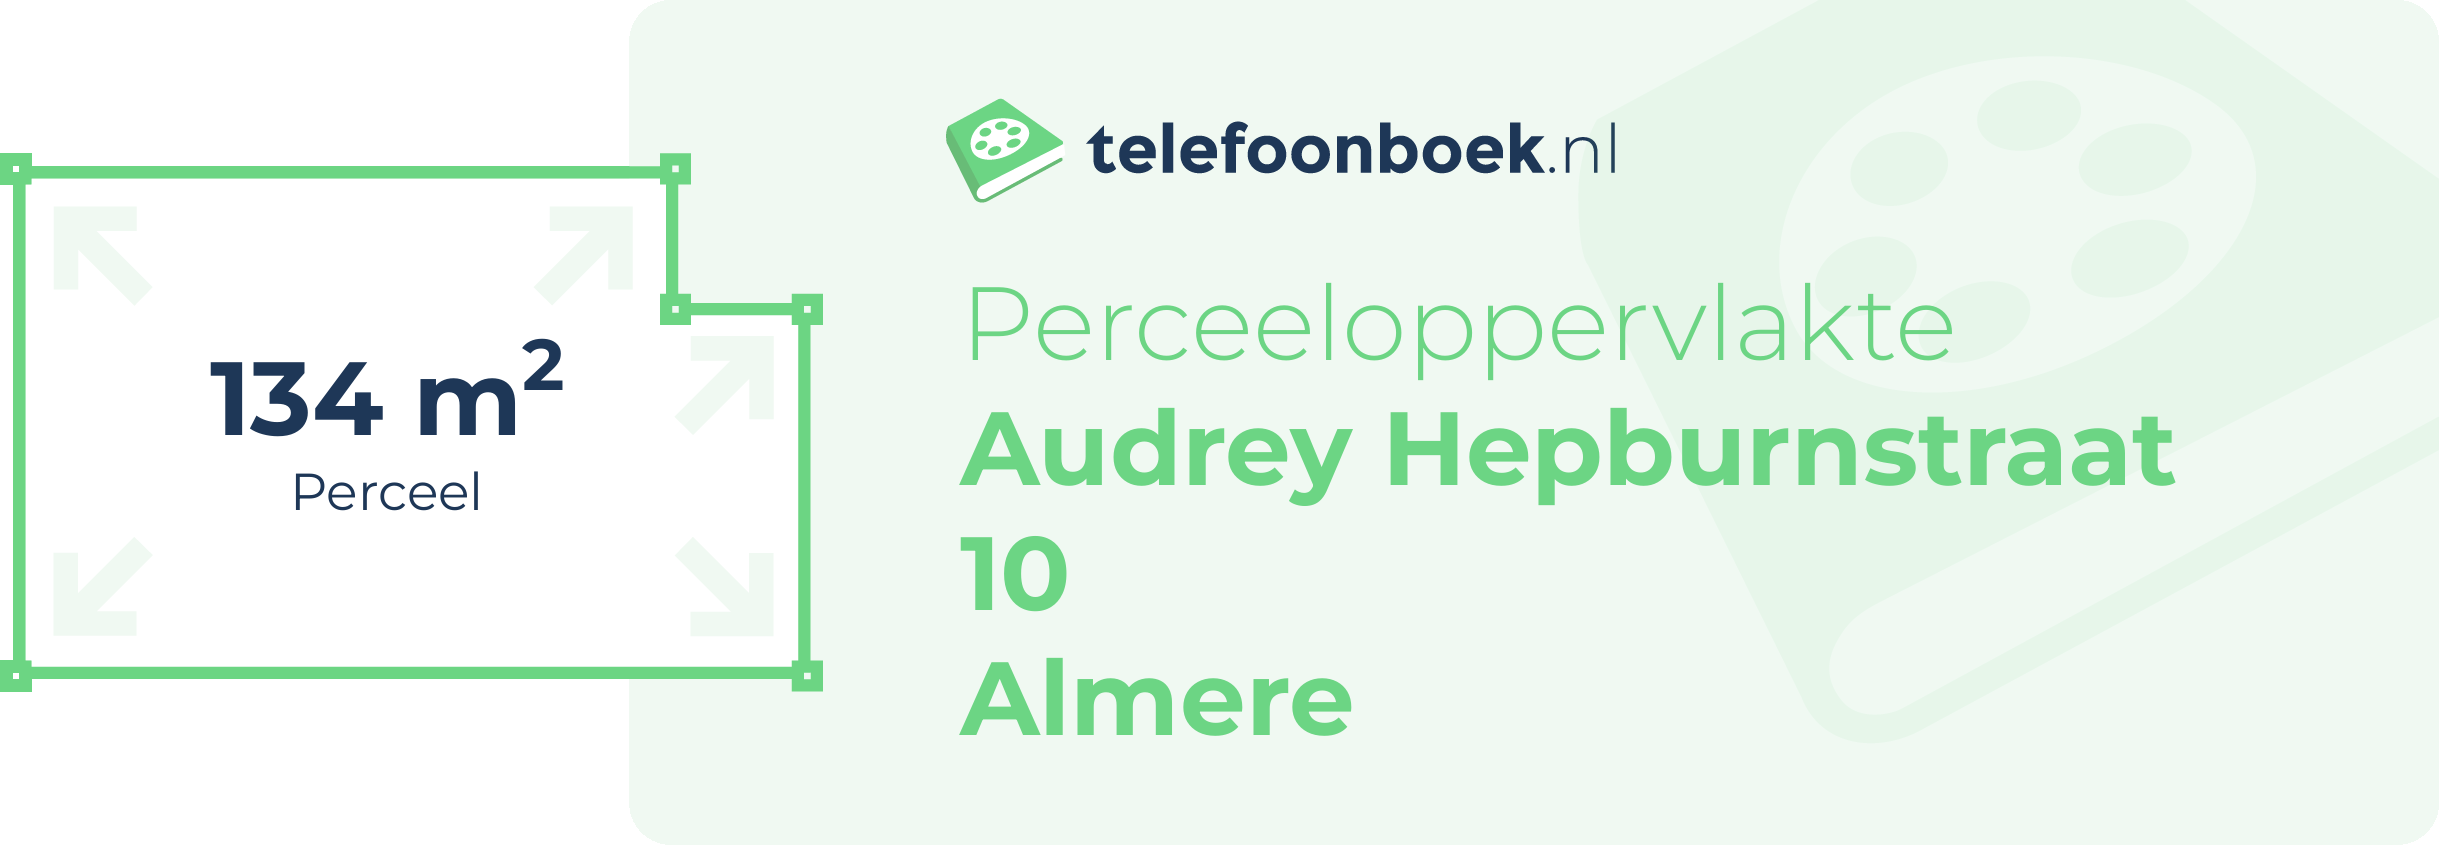 Perceeloppervlakte Audrey Hepburnstraat 10 Almere